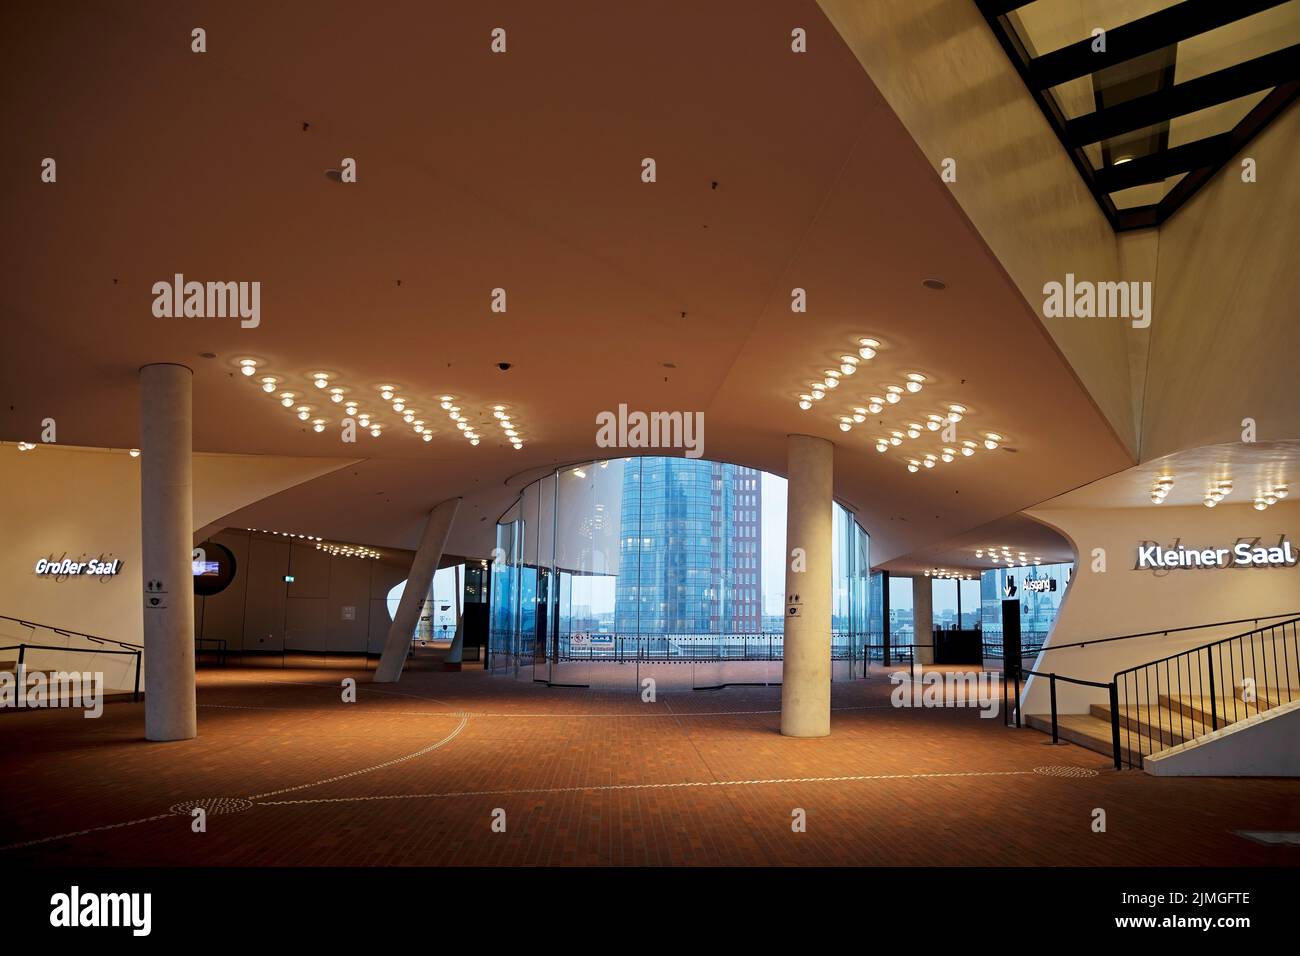 plaza con piso de ladrillo y plataforma de observación pública, Elbphilharmonie, Hamburgo, Alemania, Europa Foto de stock